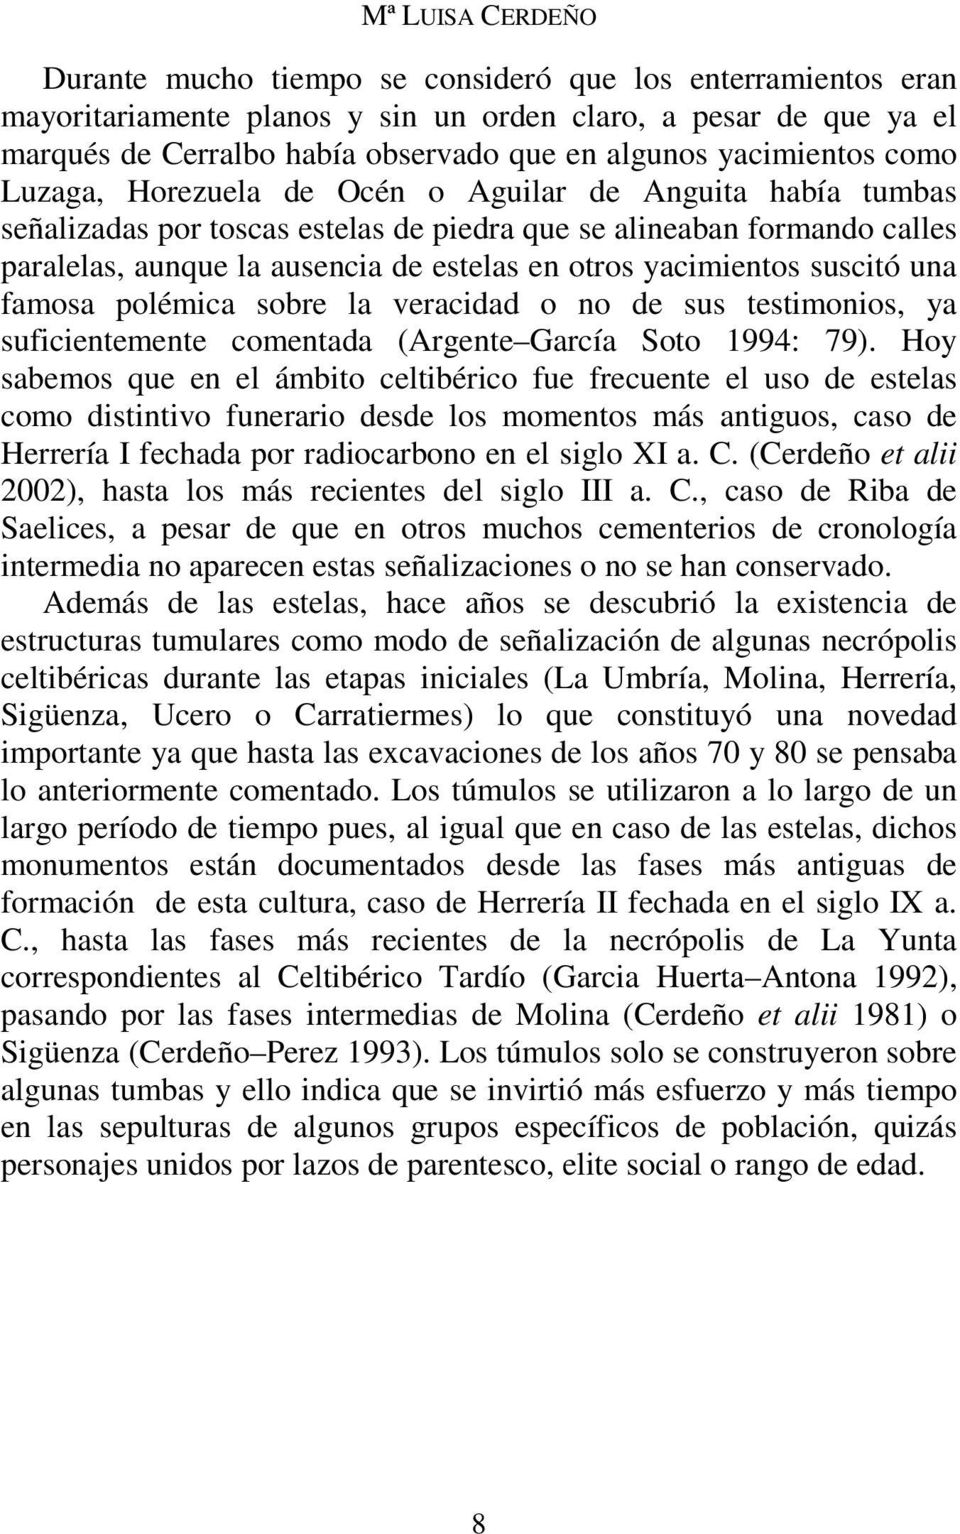 otros yacimientos suscitó una famosa polémica sobre la veracidad o no de sus testimonios, ya suficientemente comentada (Argente García Soto 1994: 79).